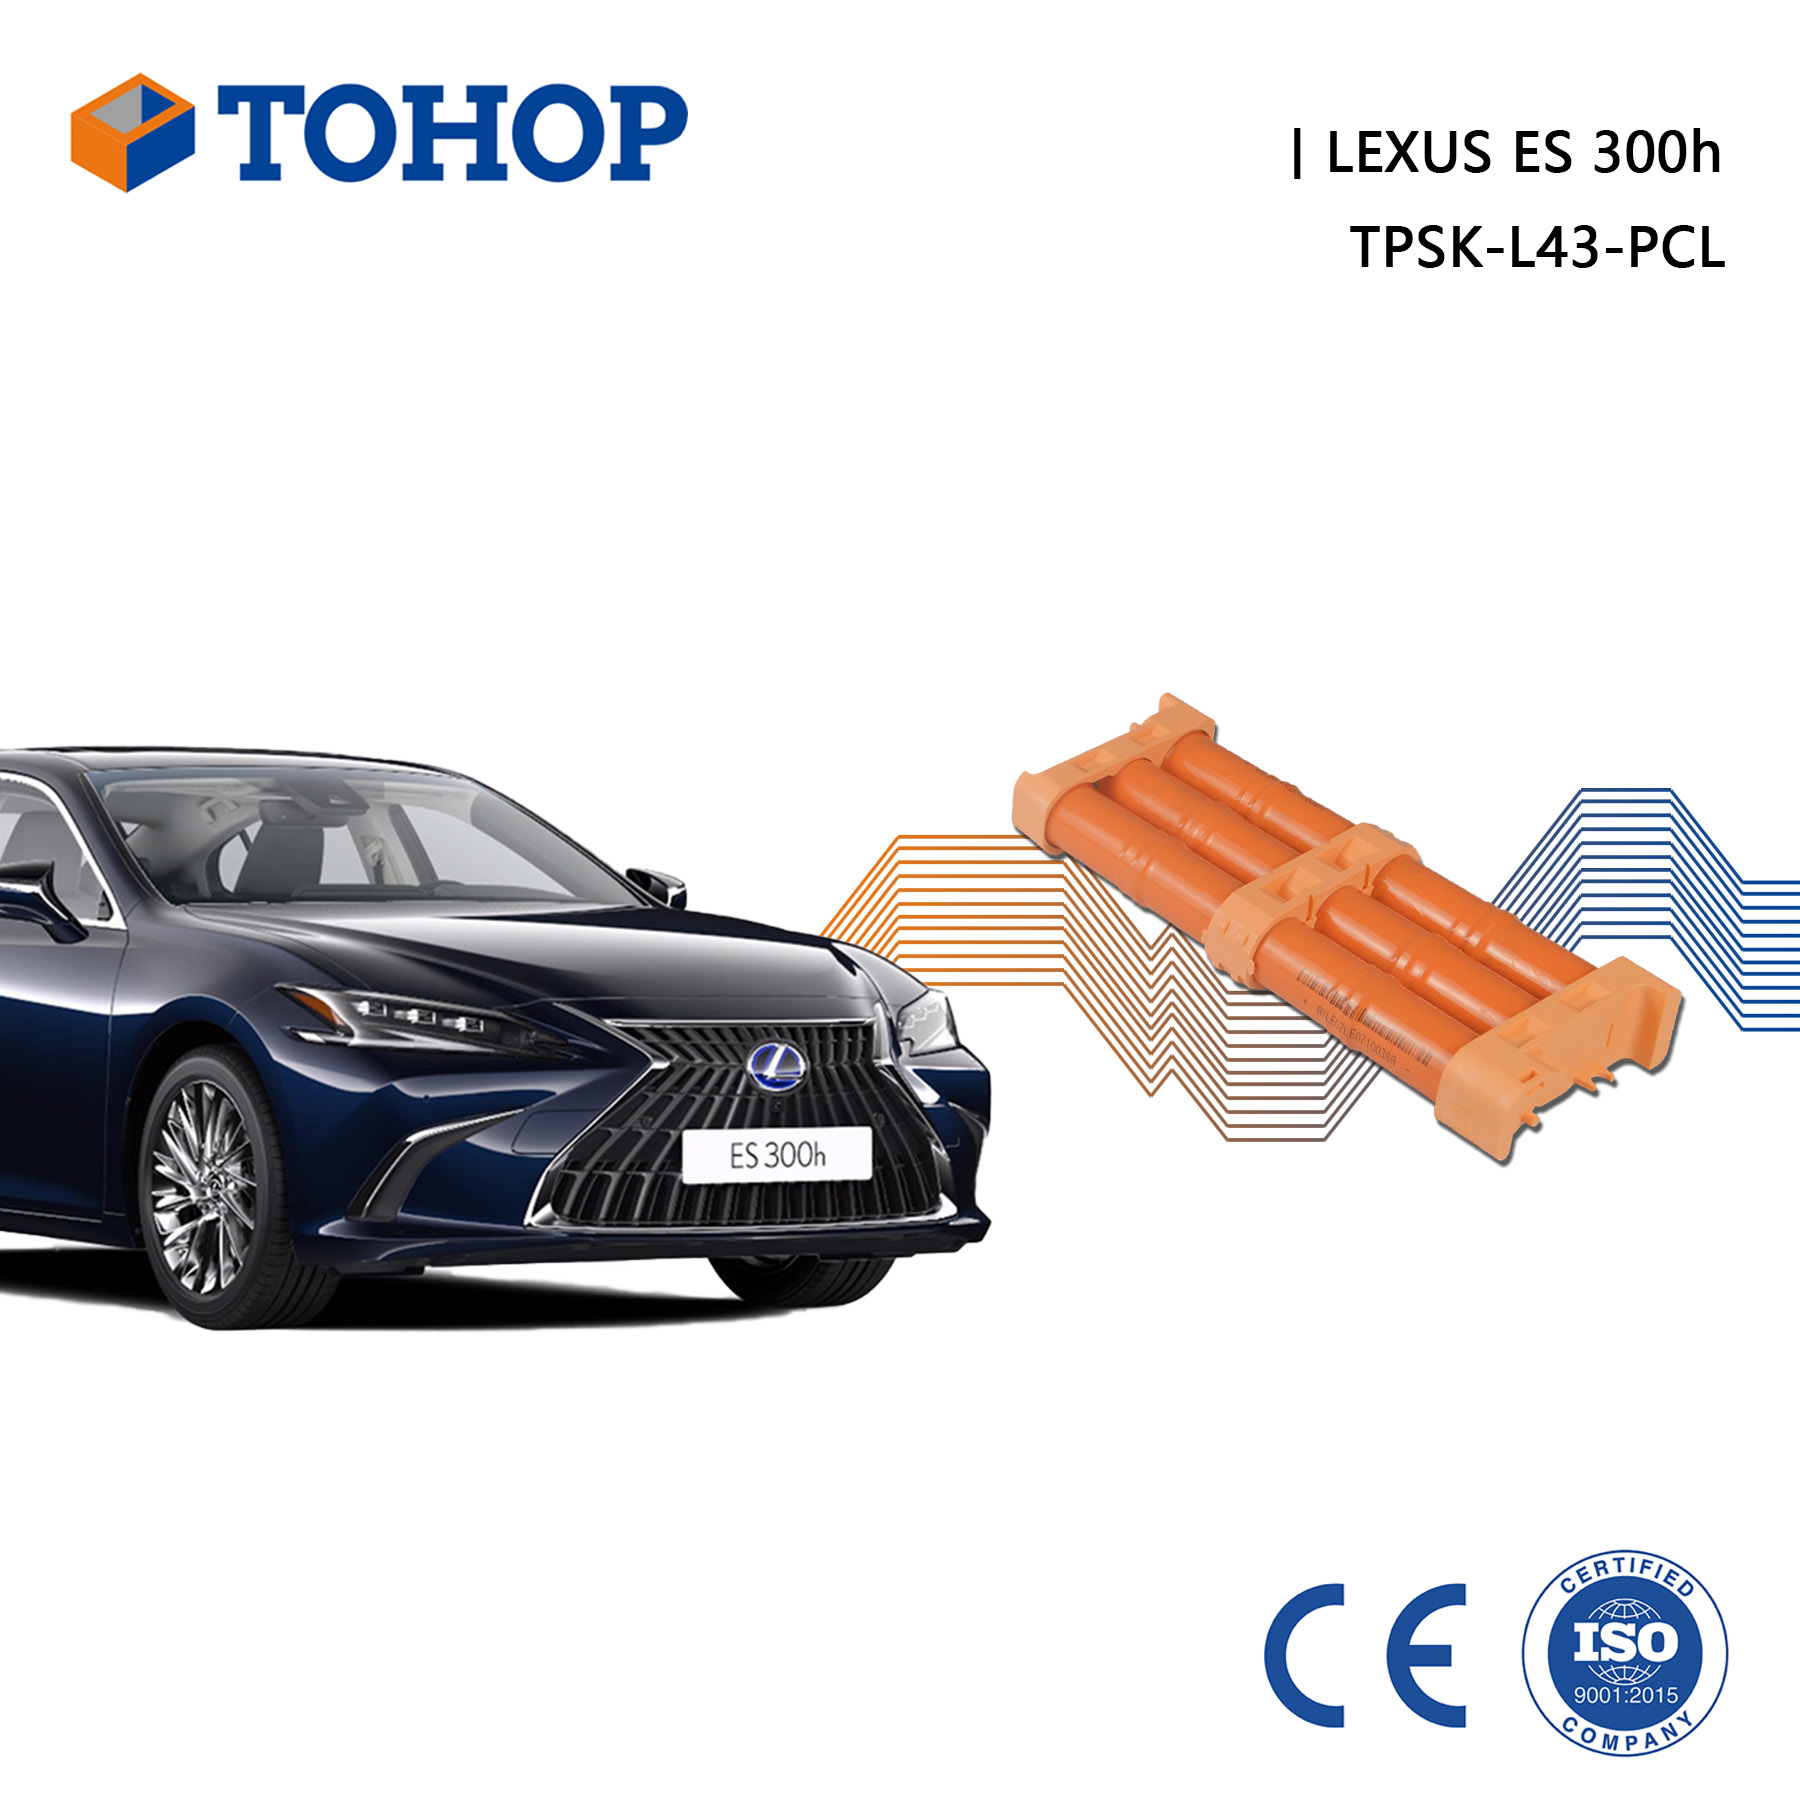 TOHOP Reemplazo Lexus ES 300H Batería híbrida 14.4V 6.5Ah Nimh Batería híbrida